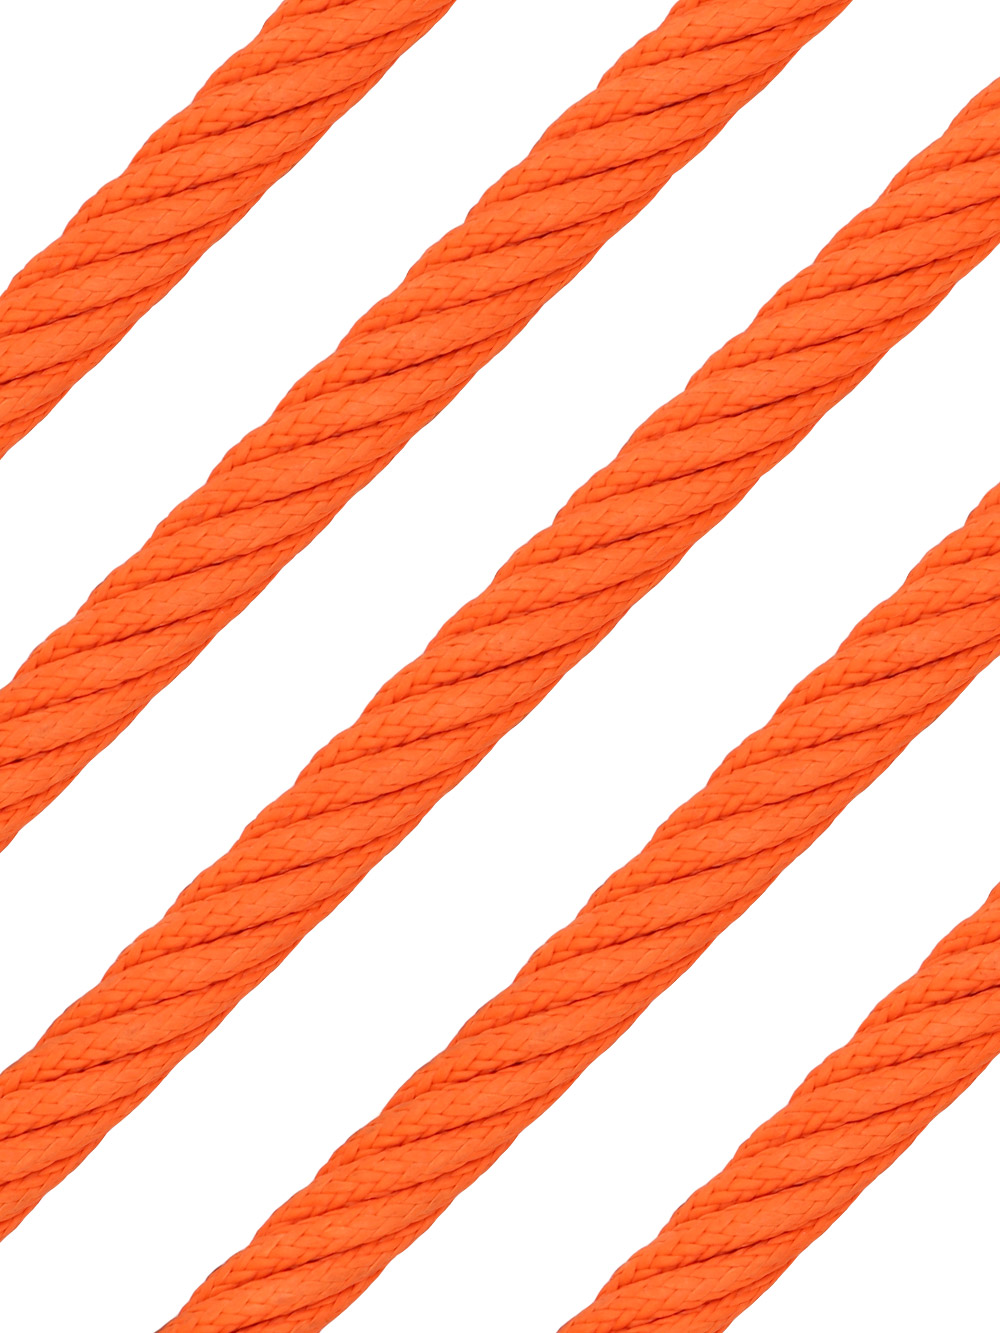 Netform 16mm OR  InCord Netform 16mm Orange Steel Reinforced Rope